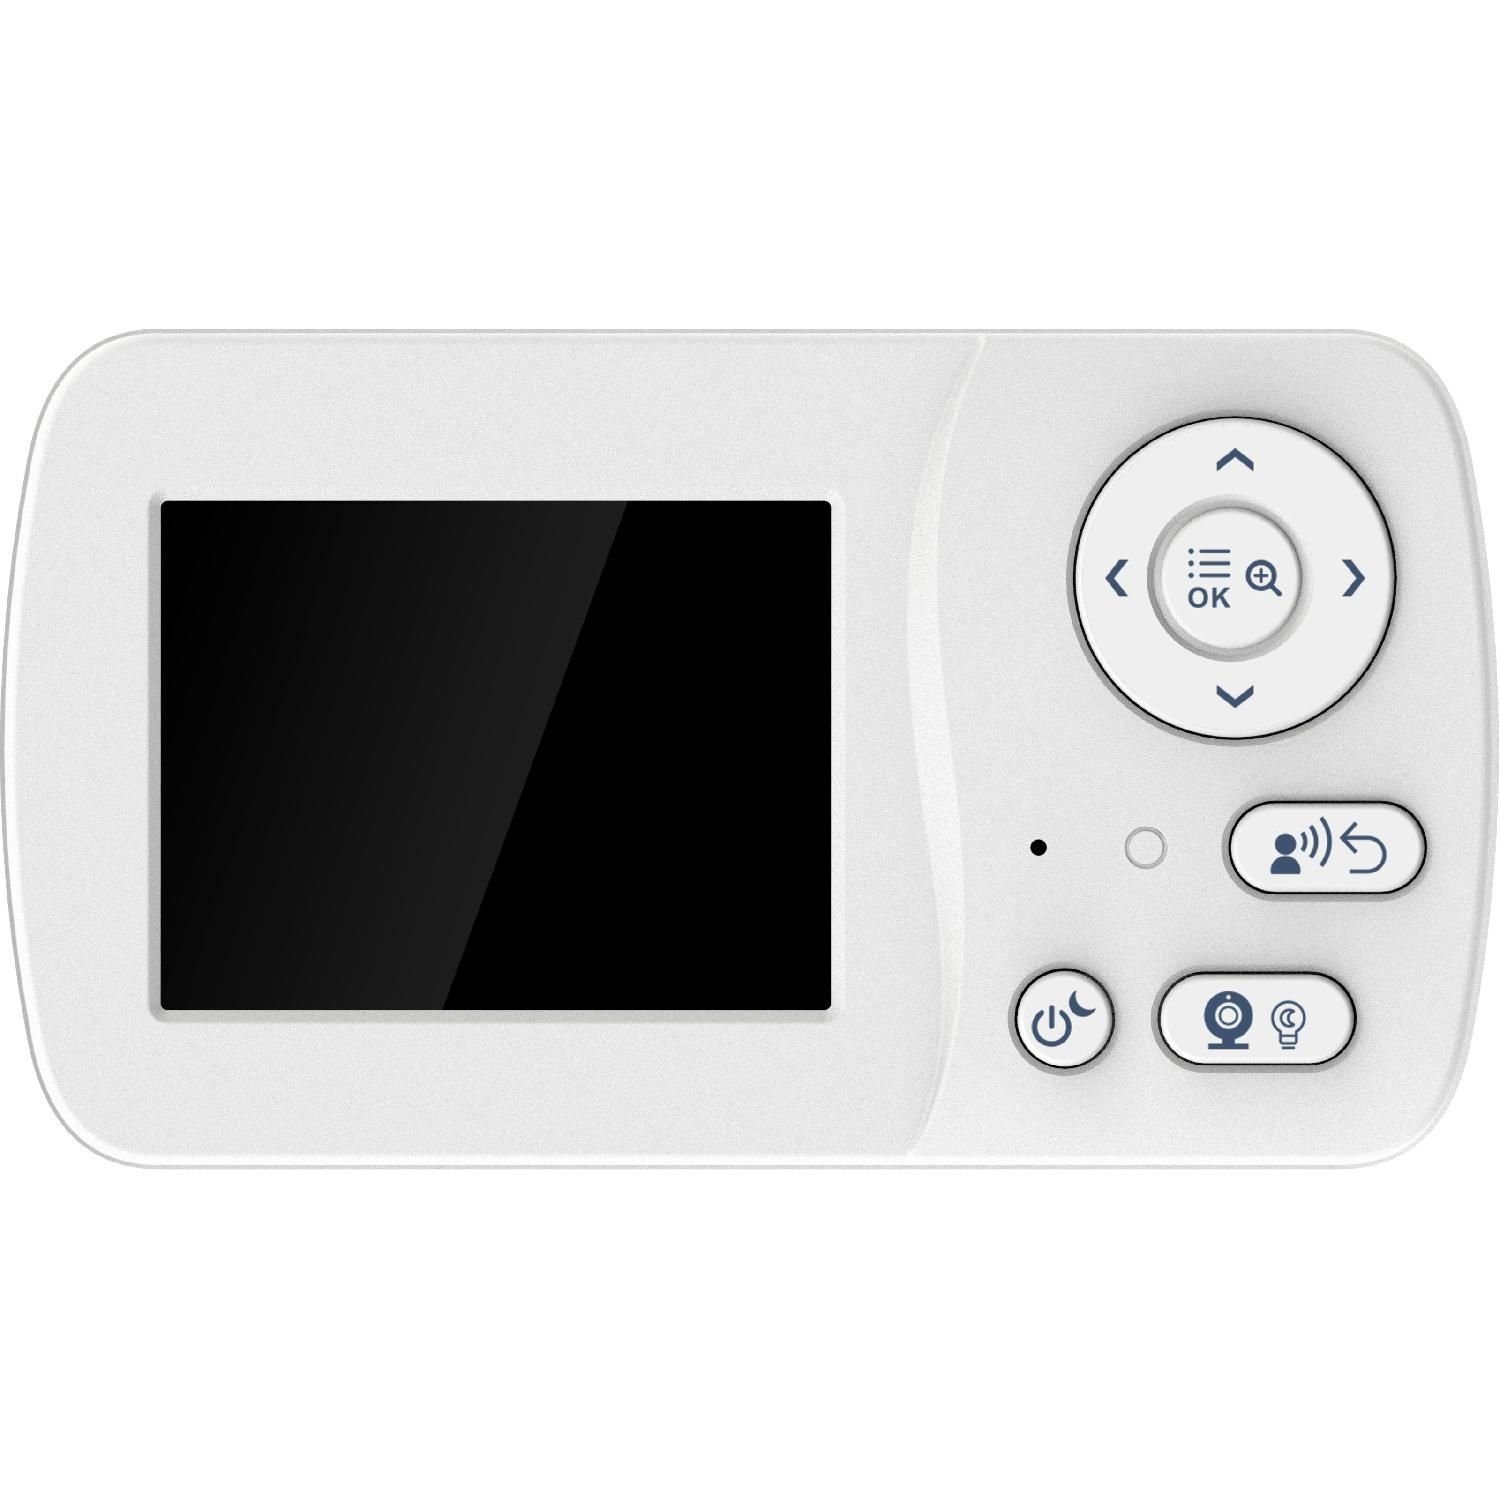 VM-F200 Px, Telefunken Starre Infrarotmodus Video-Babyphone 320x240 Video-Babyphone 2,4'' Kamera Display